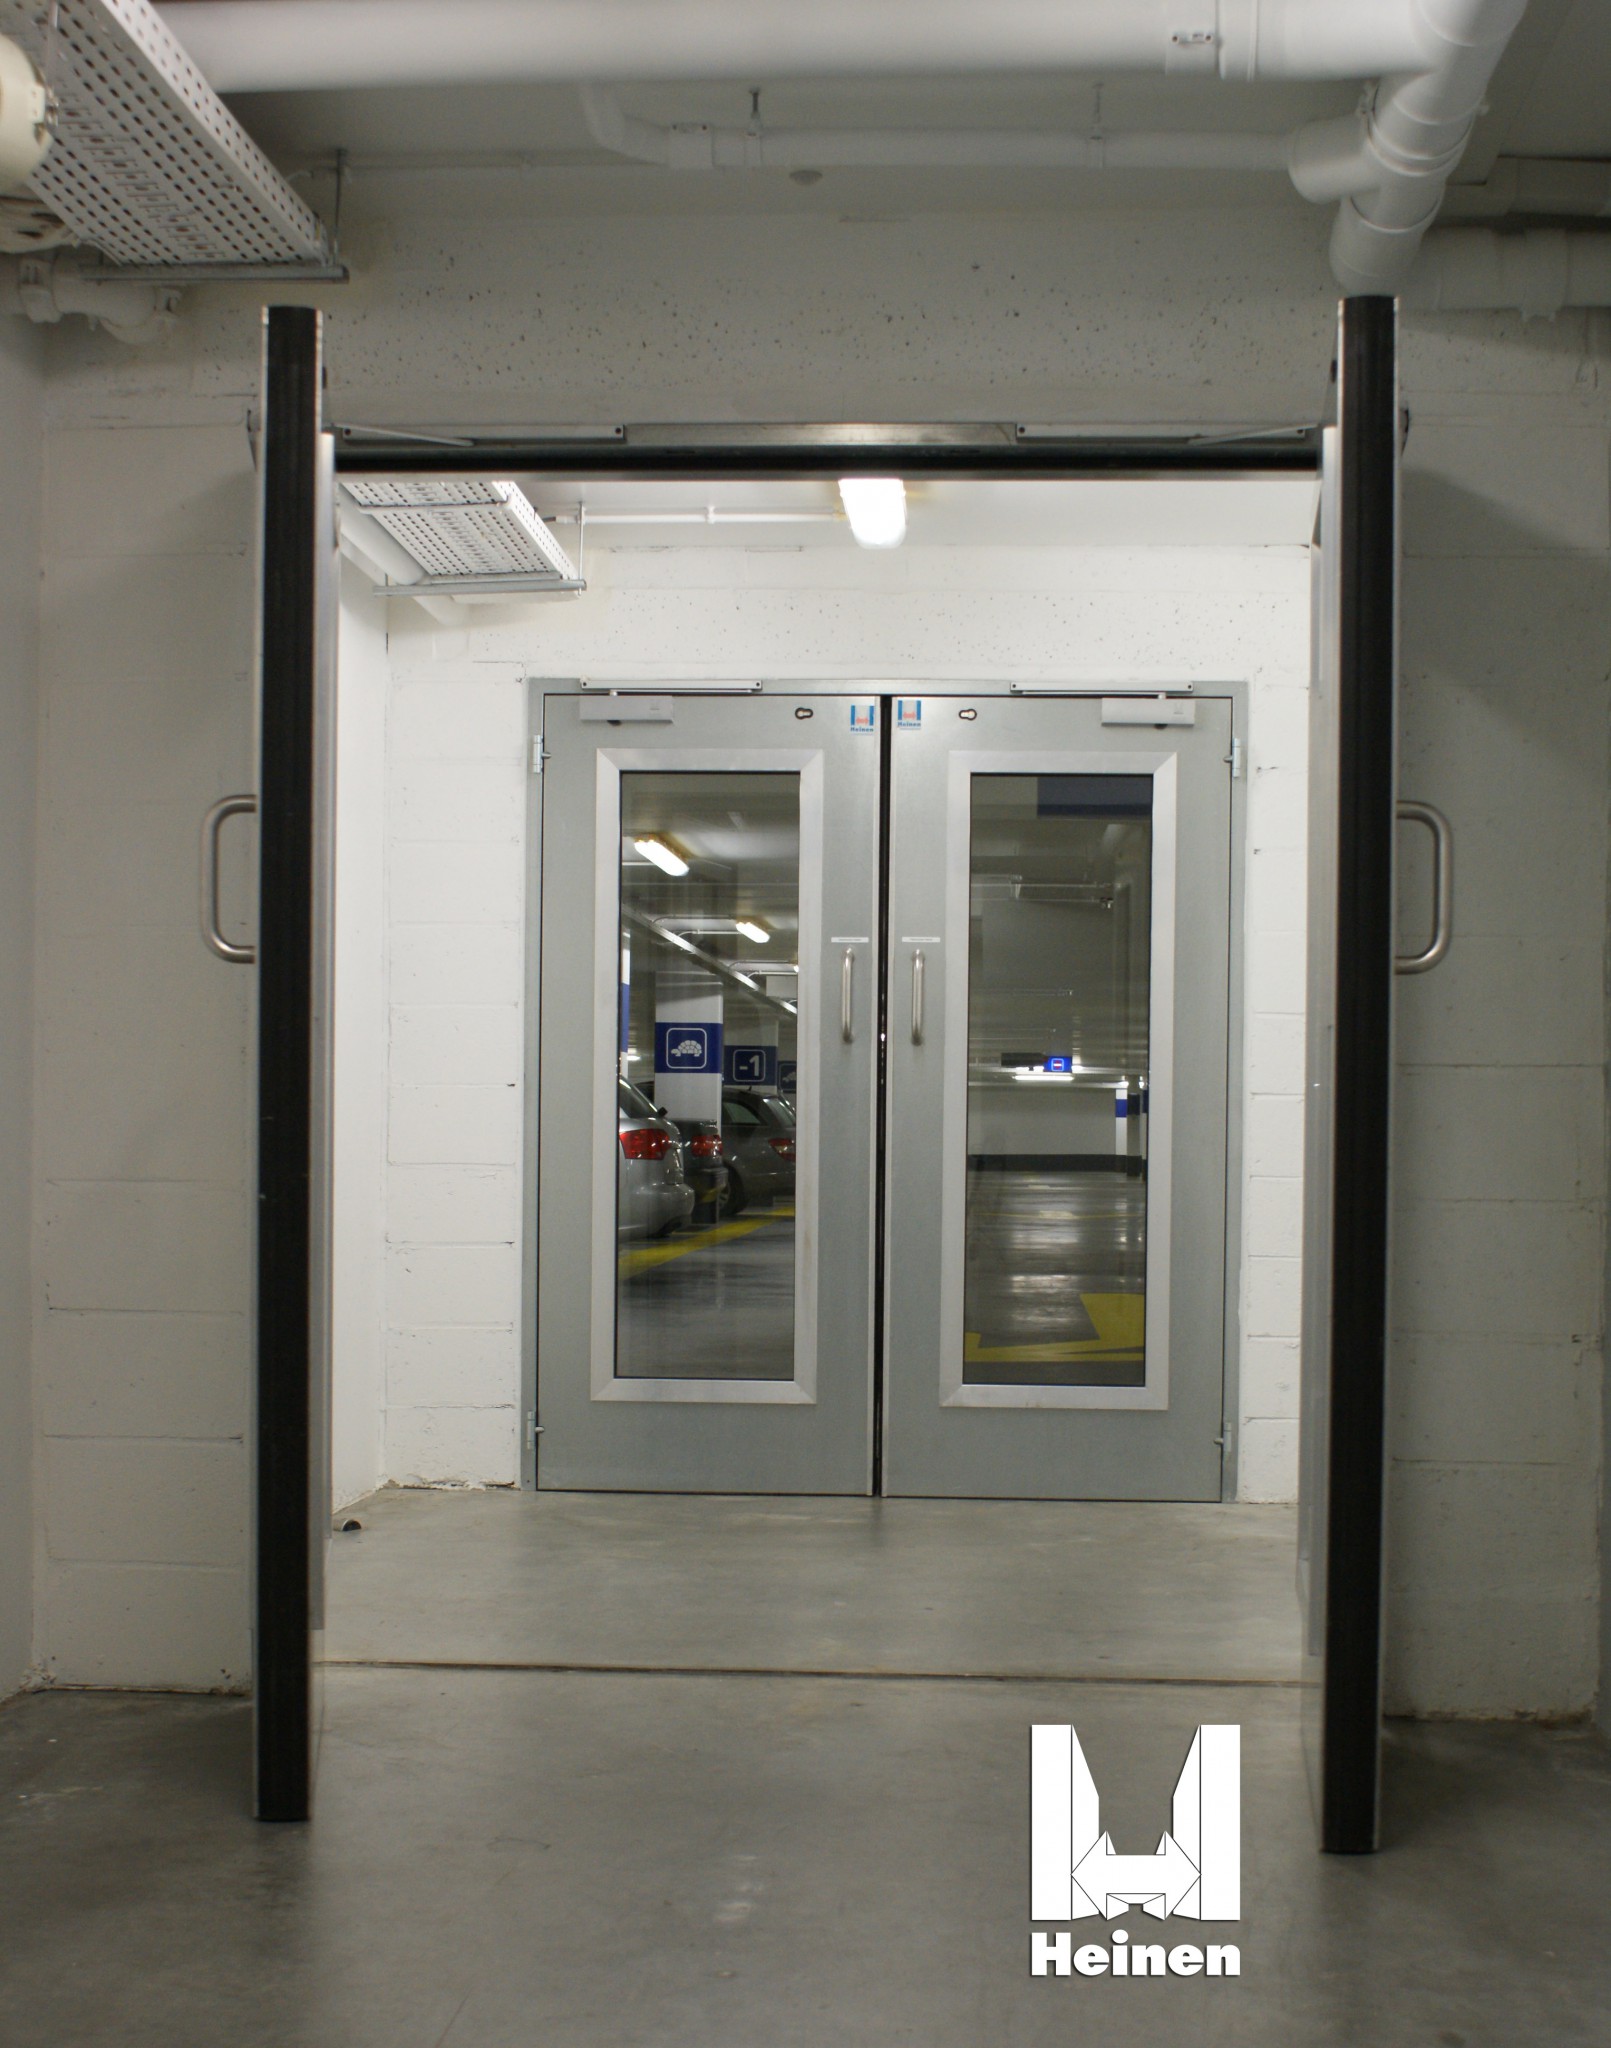 Installation de portes métalliques de type HEINEN métal+, pour entrée de cage d’escalier.